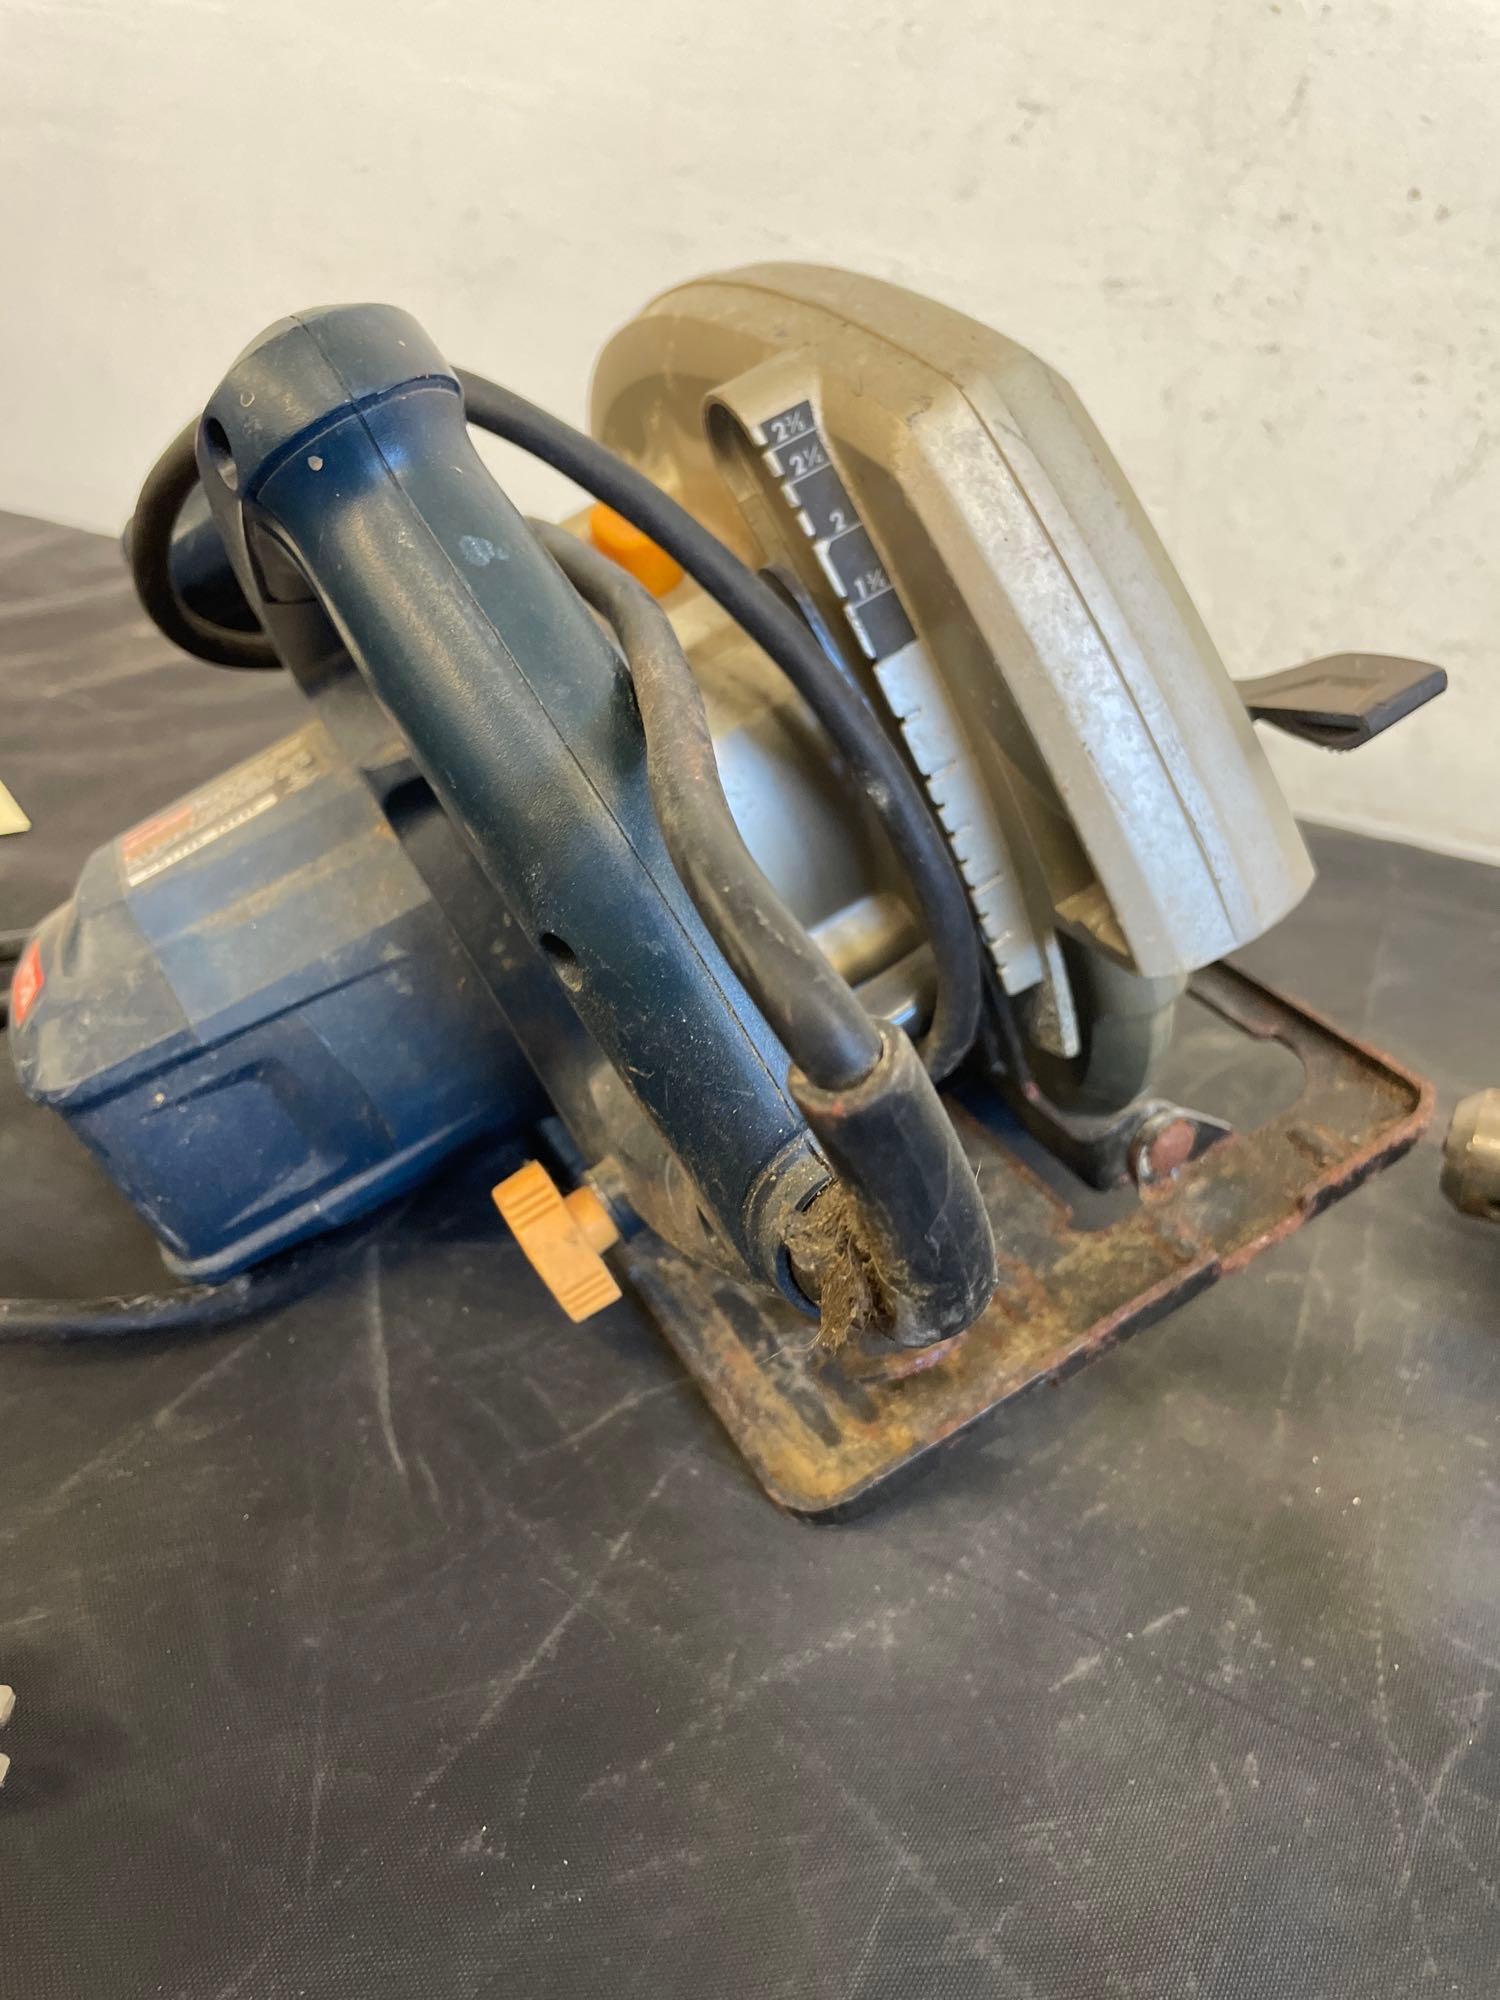 Ryobi circular saw and makita Hammer Drill